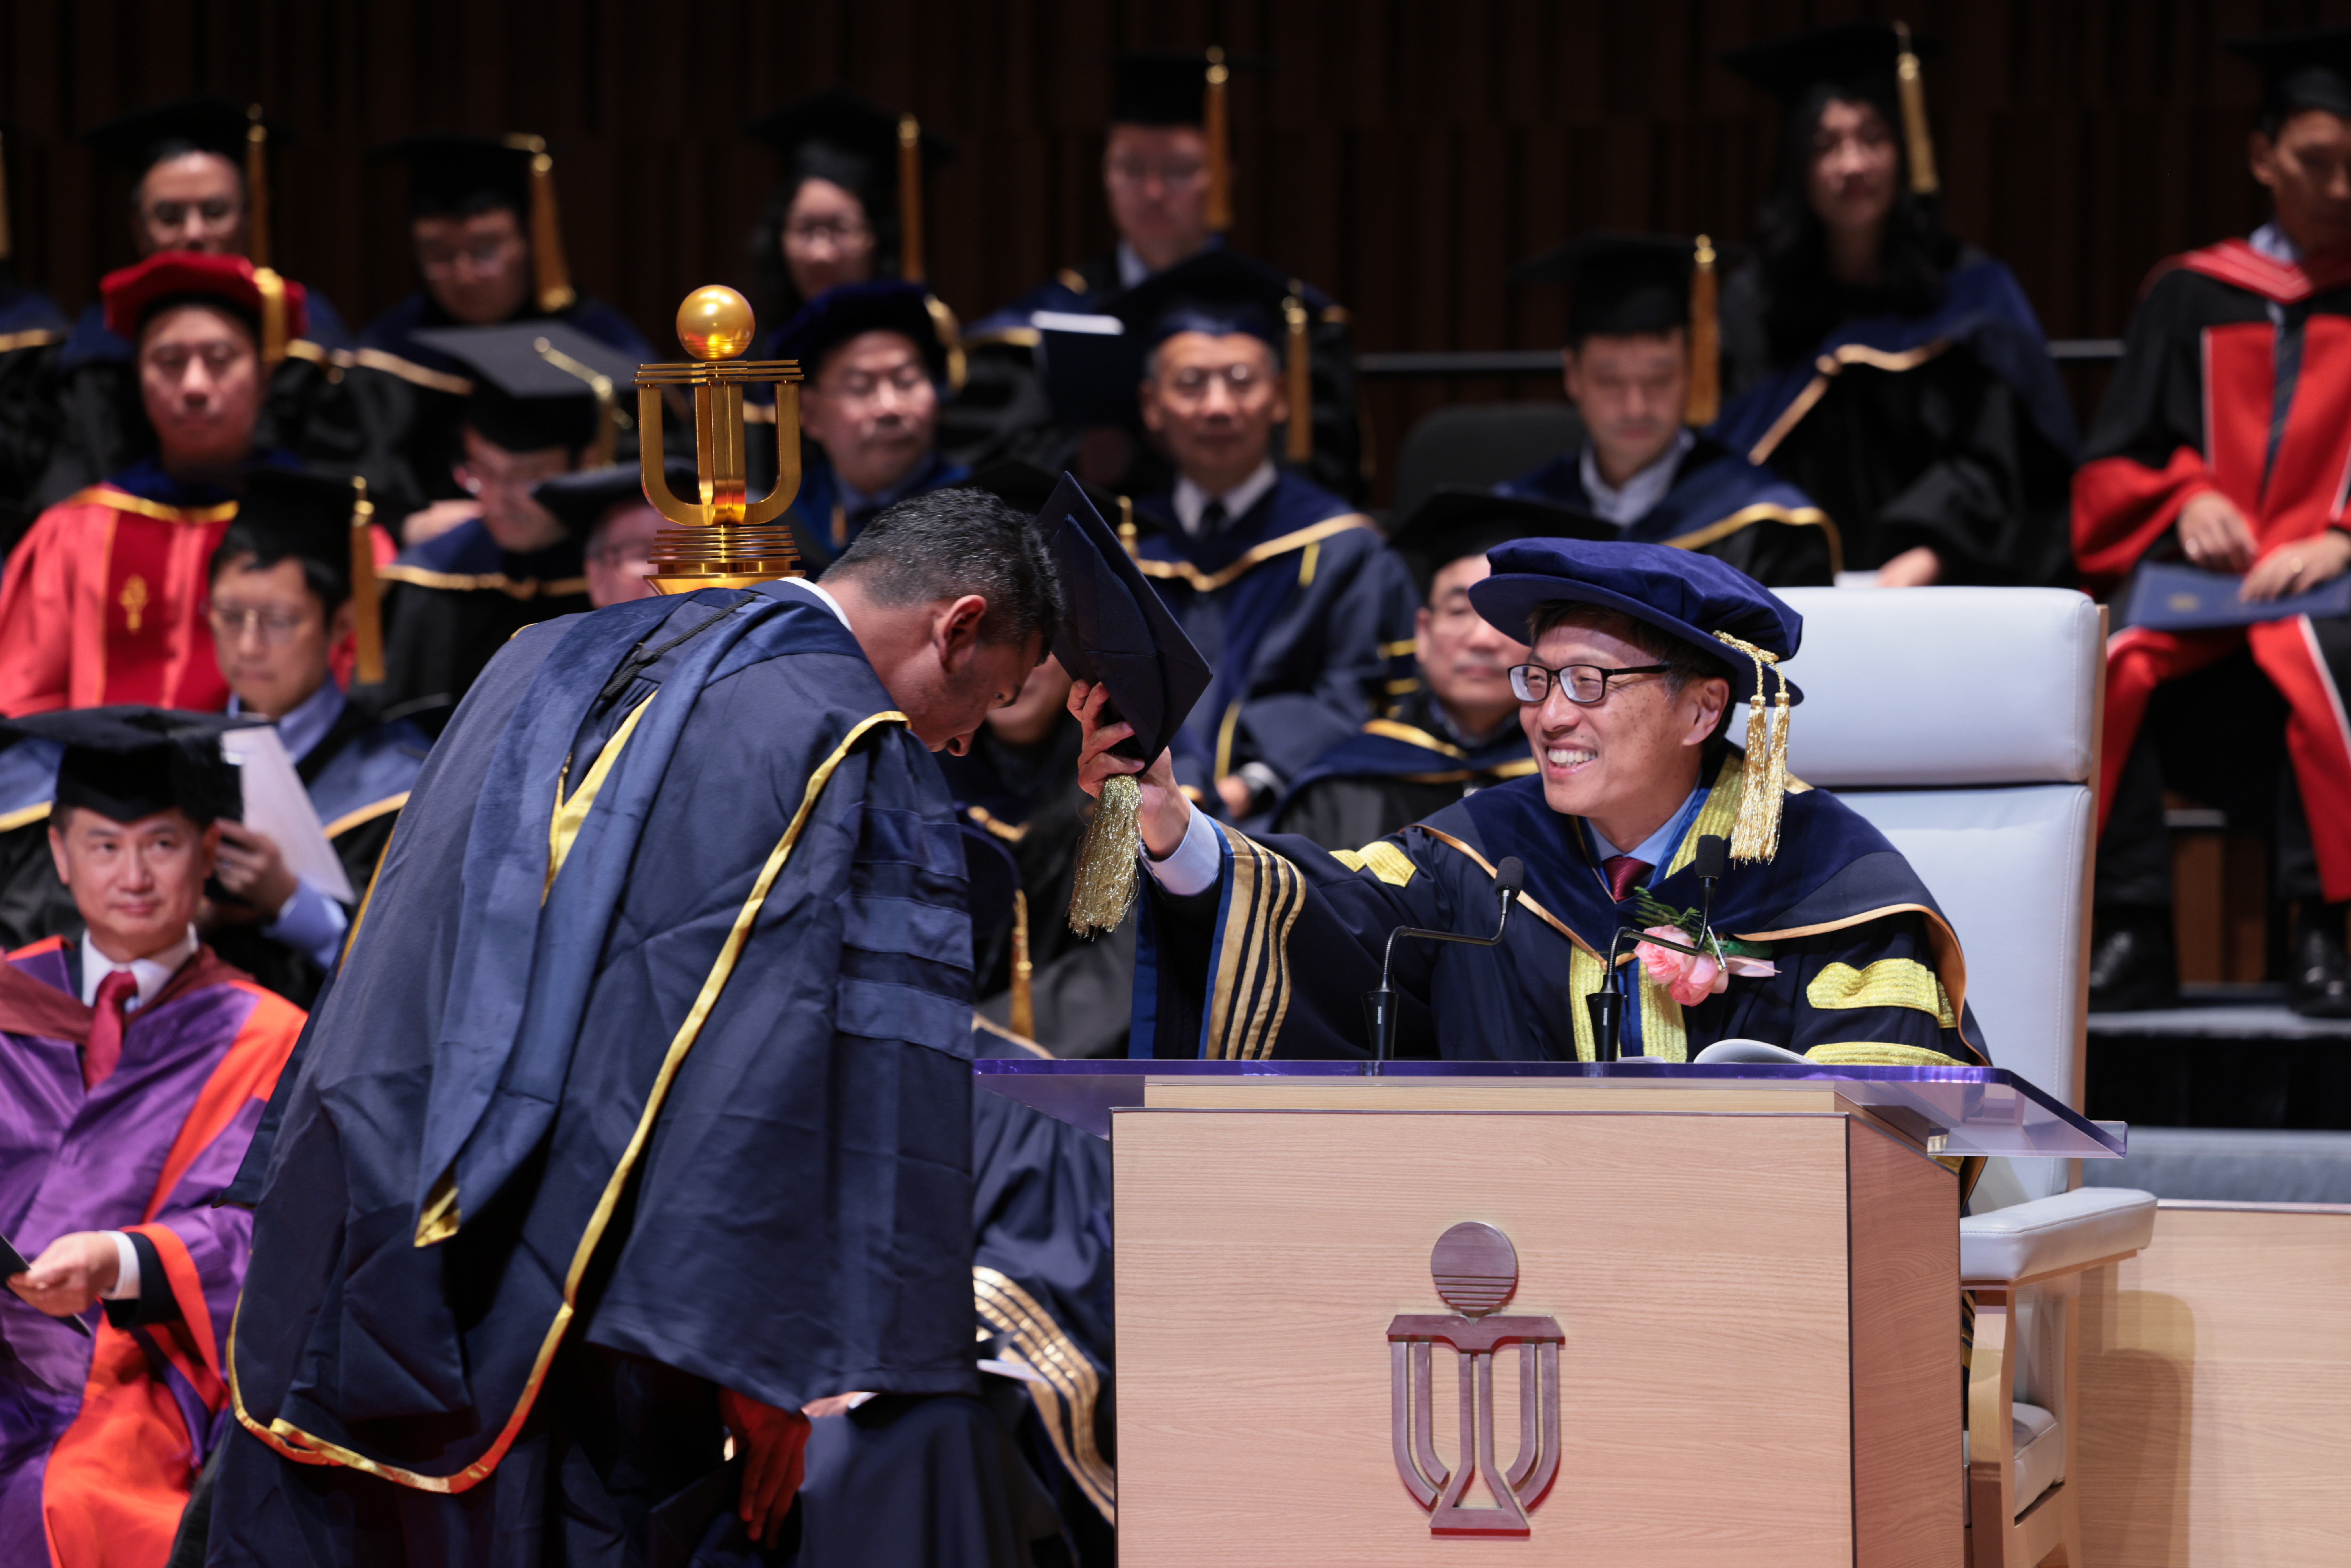 科大校董会主席沈向洋教授于典礼第二节向毕业生颁授学位。